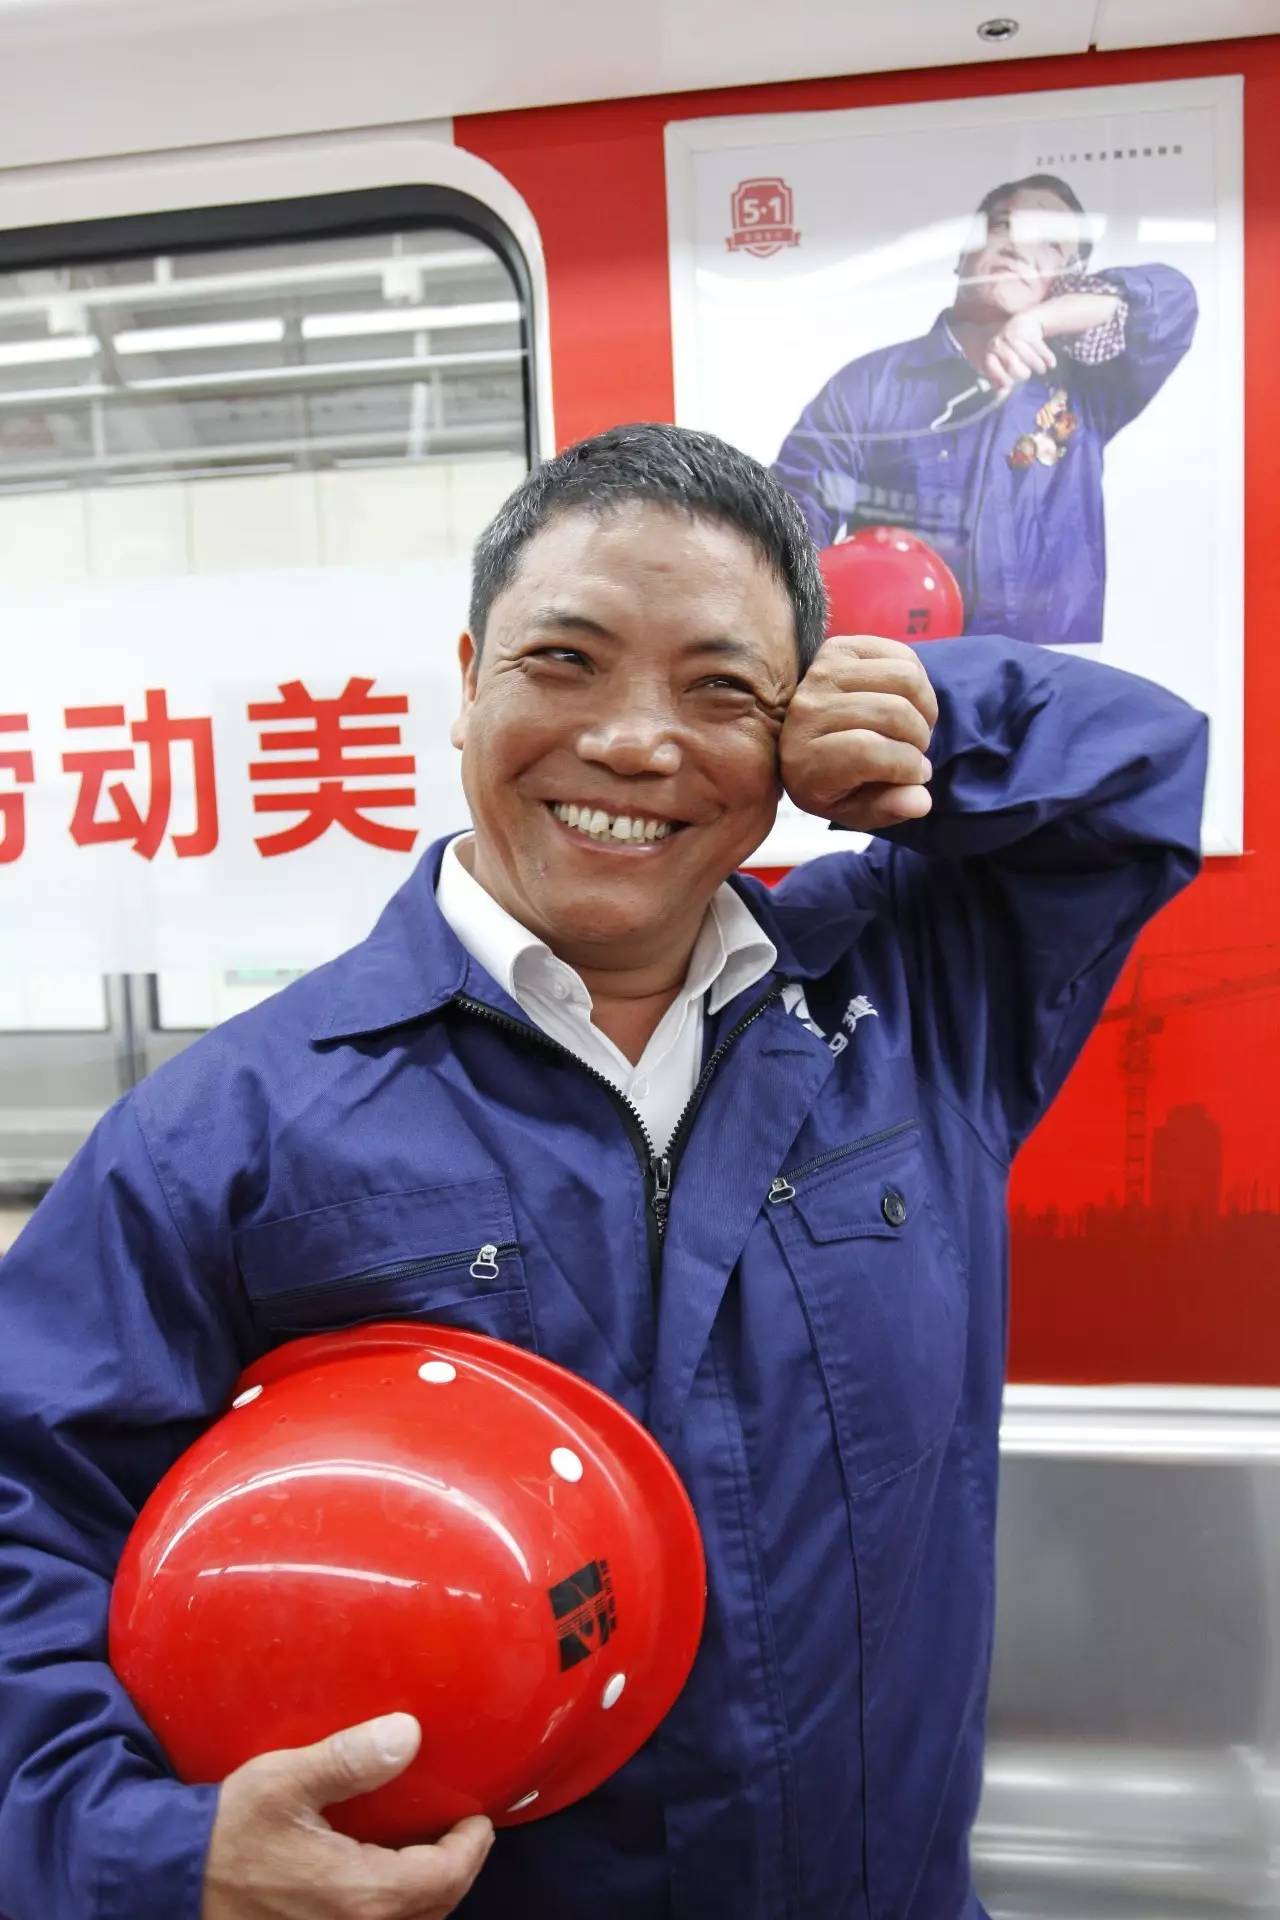 六位全国劳模登上中国首趟劳模专列,女网红现场直播